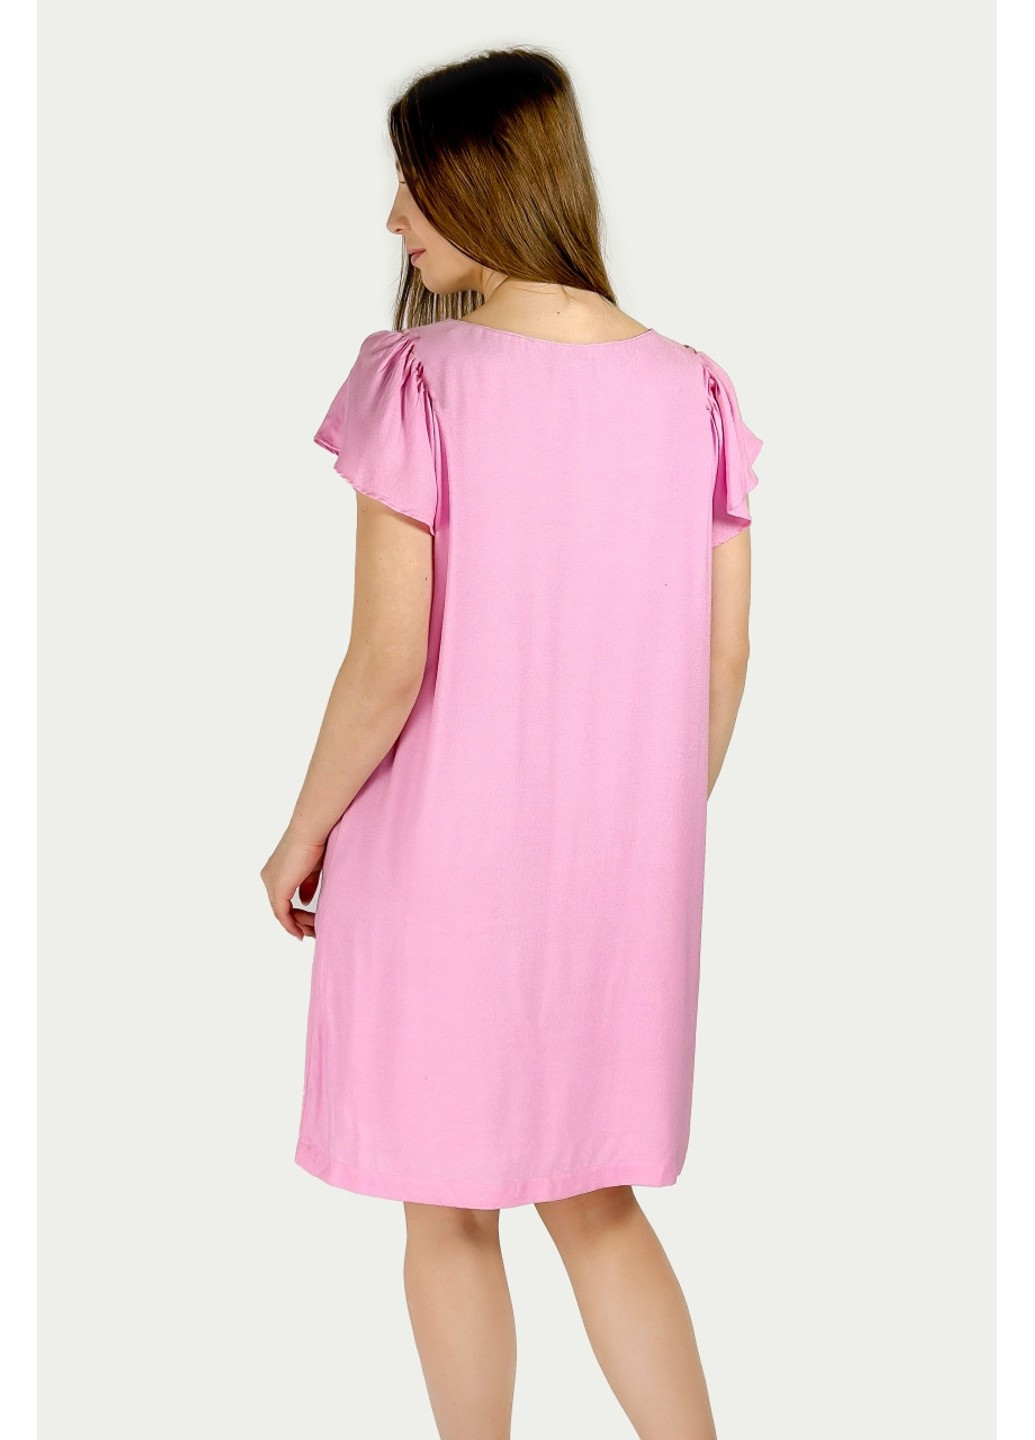 Розовое повседневный платье 1112/055/636 футляр Zara однотонное